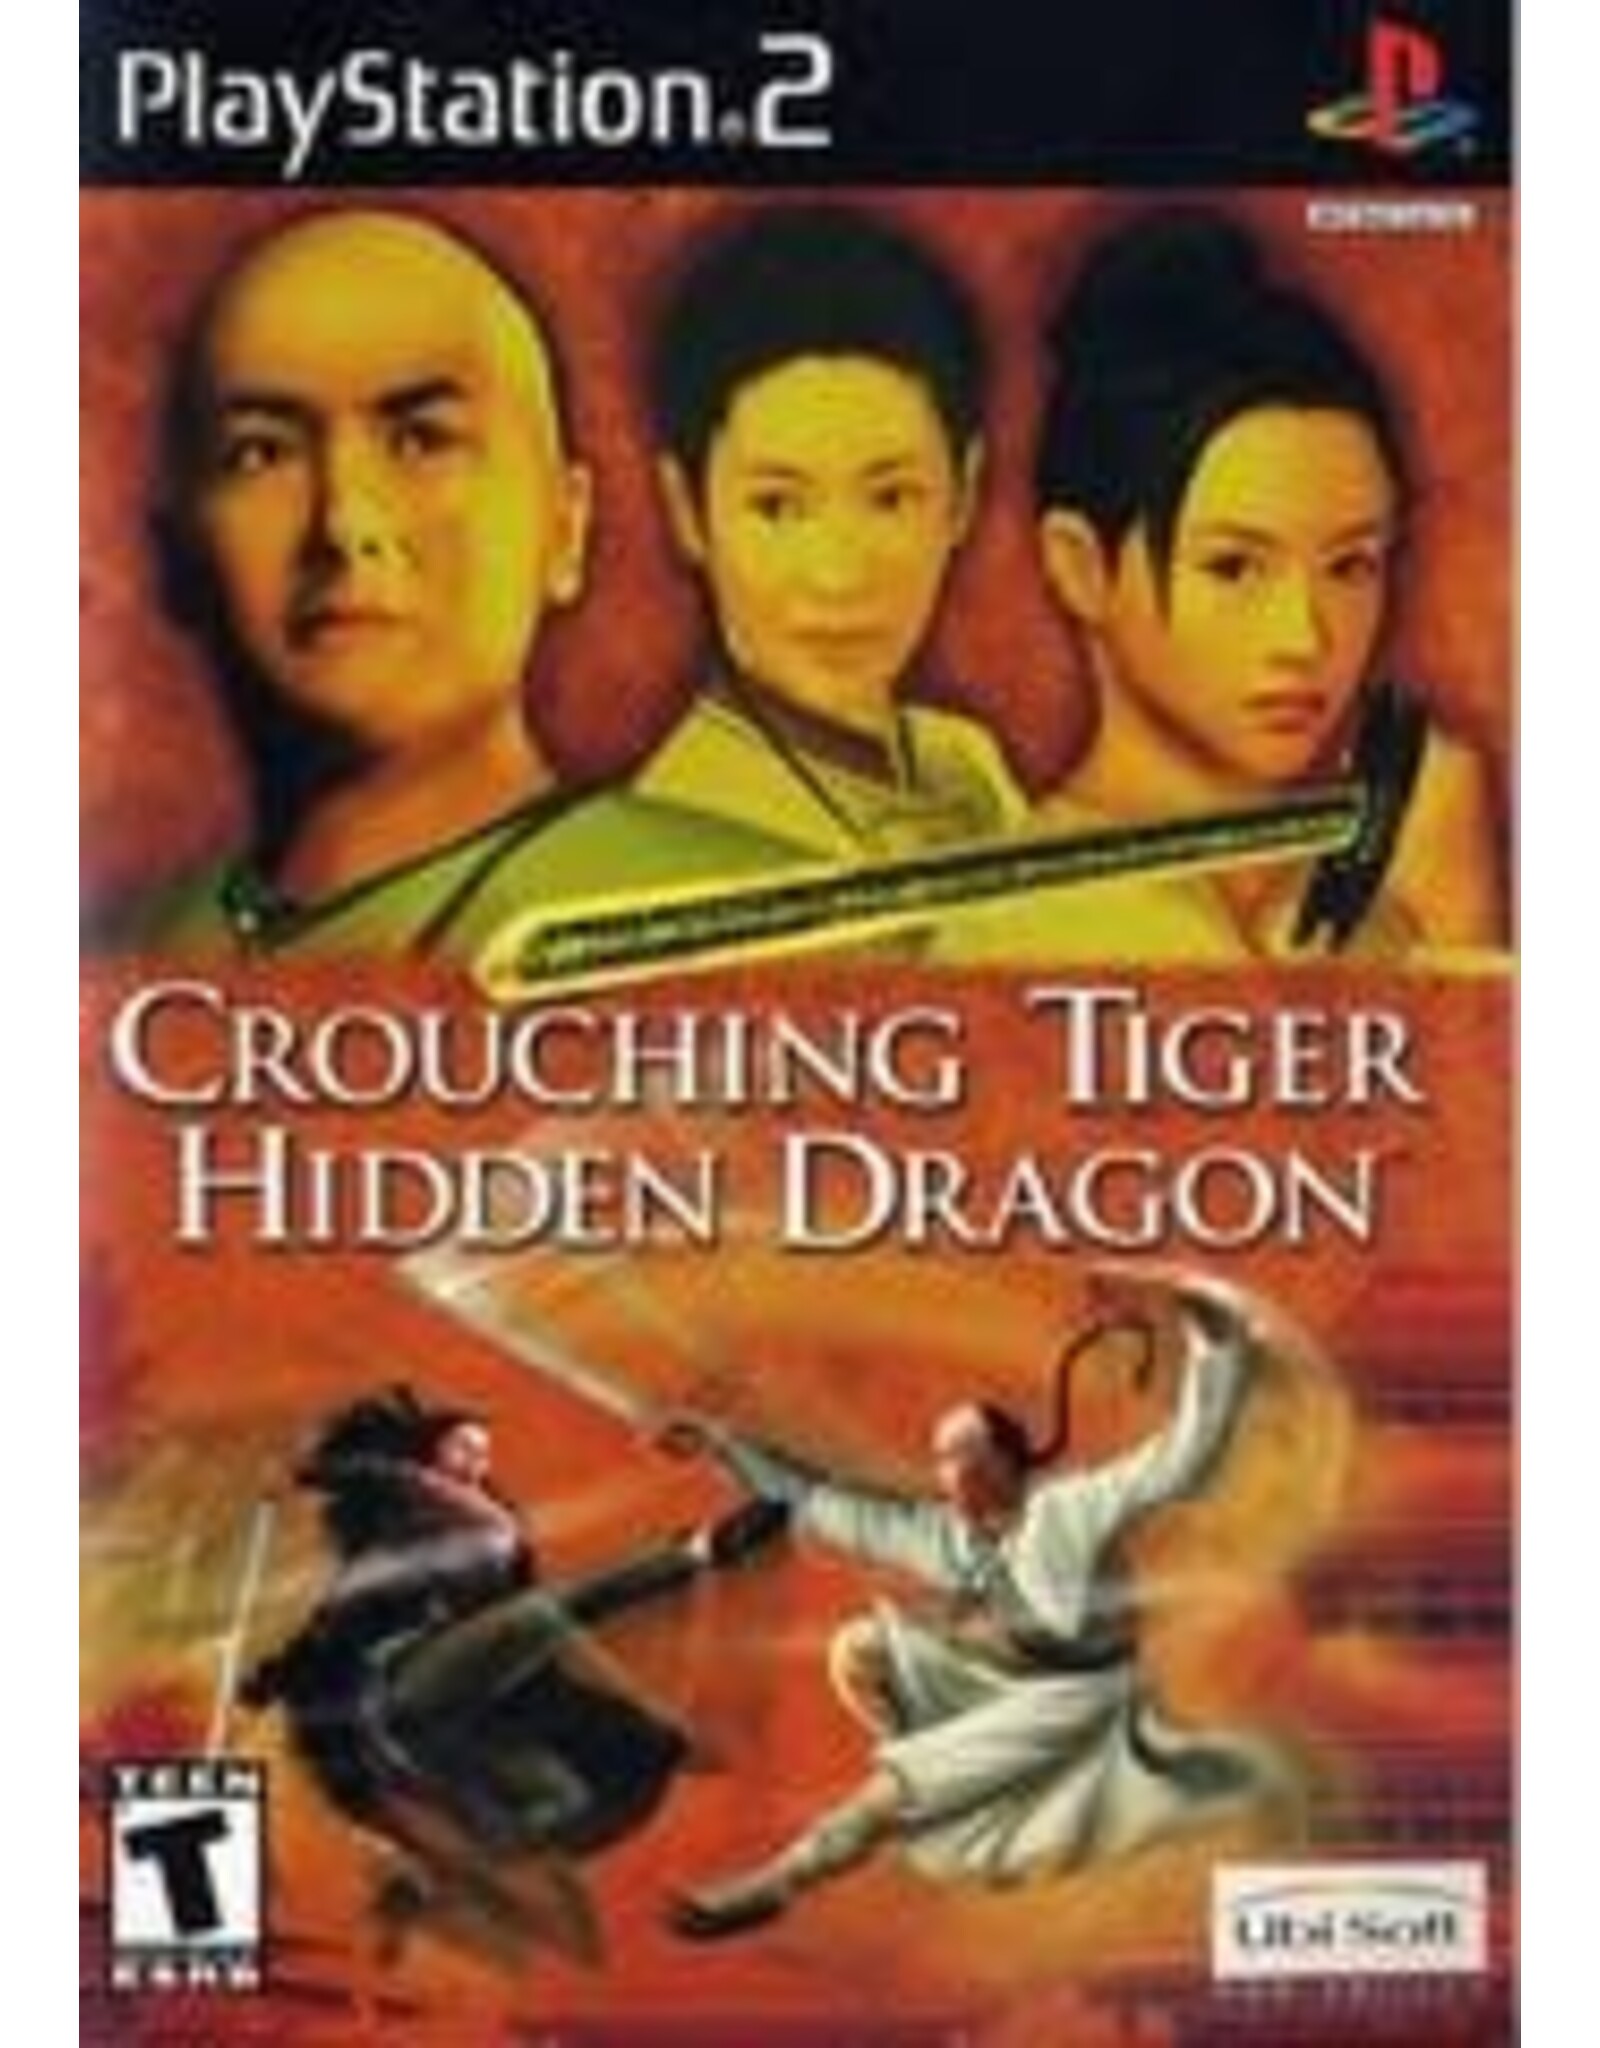 Playstation 2 Crouching Tiger Hidden Dragon (No Manual)